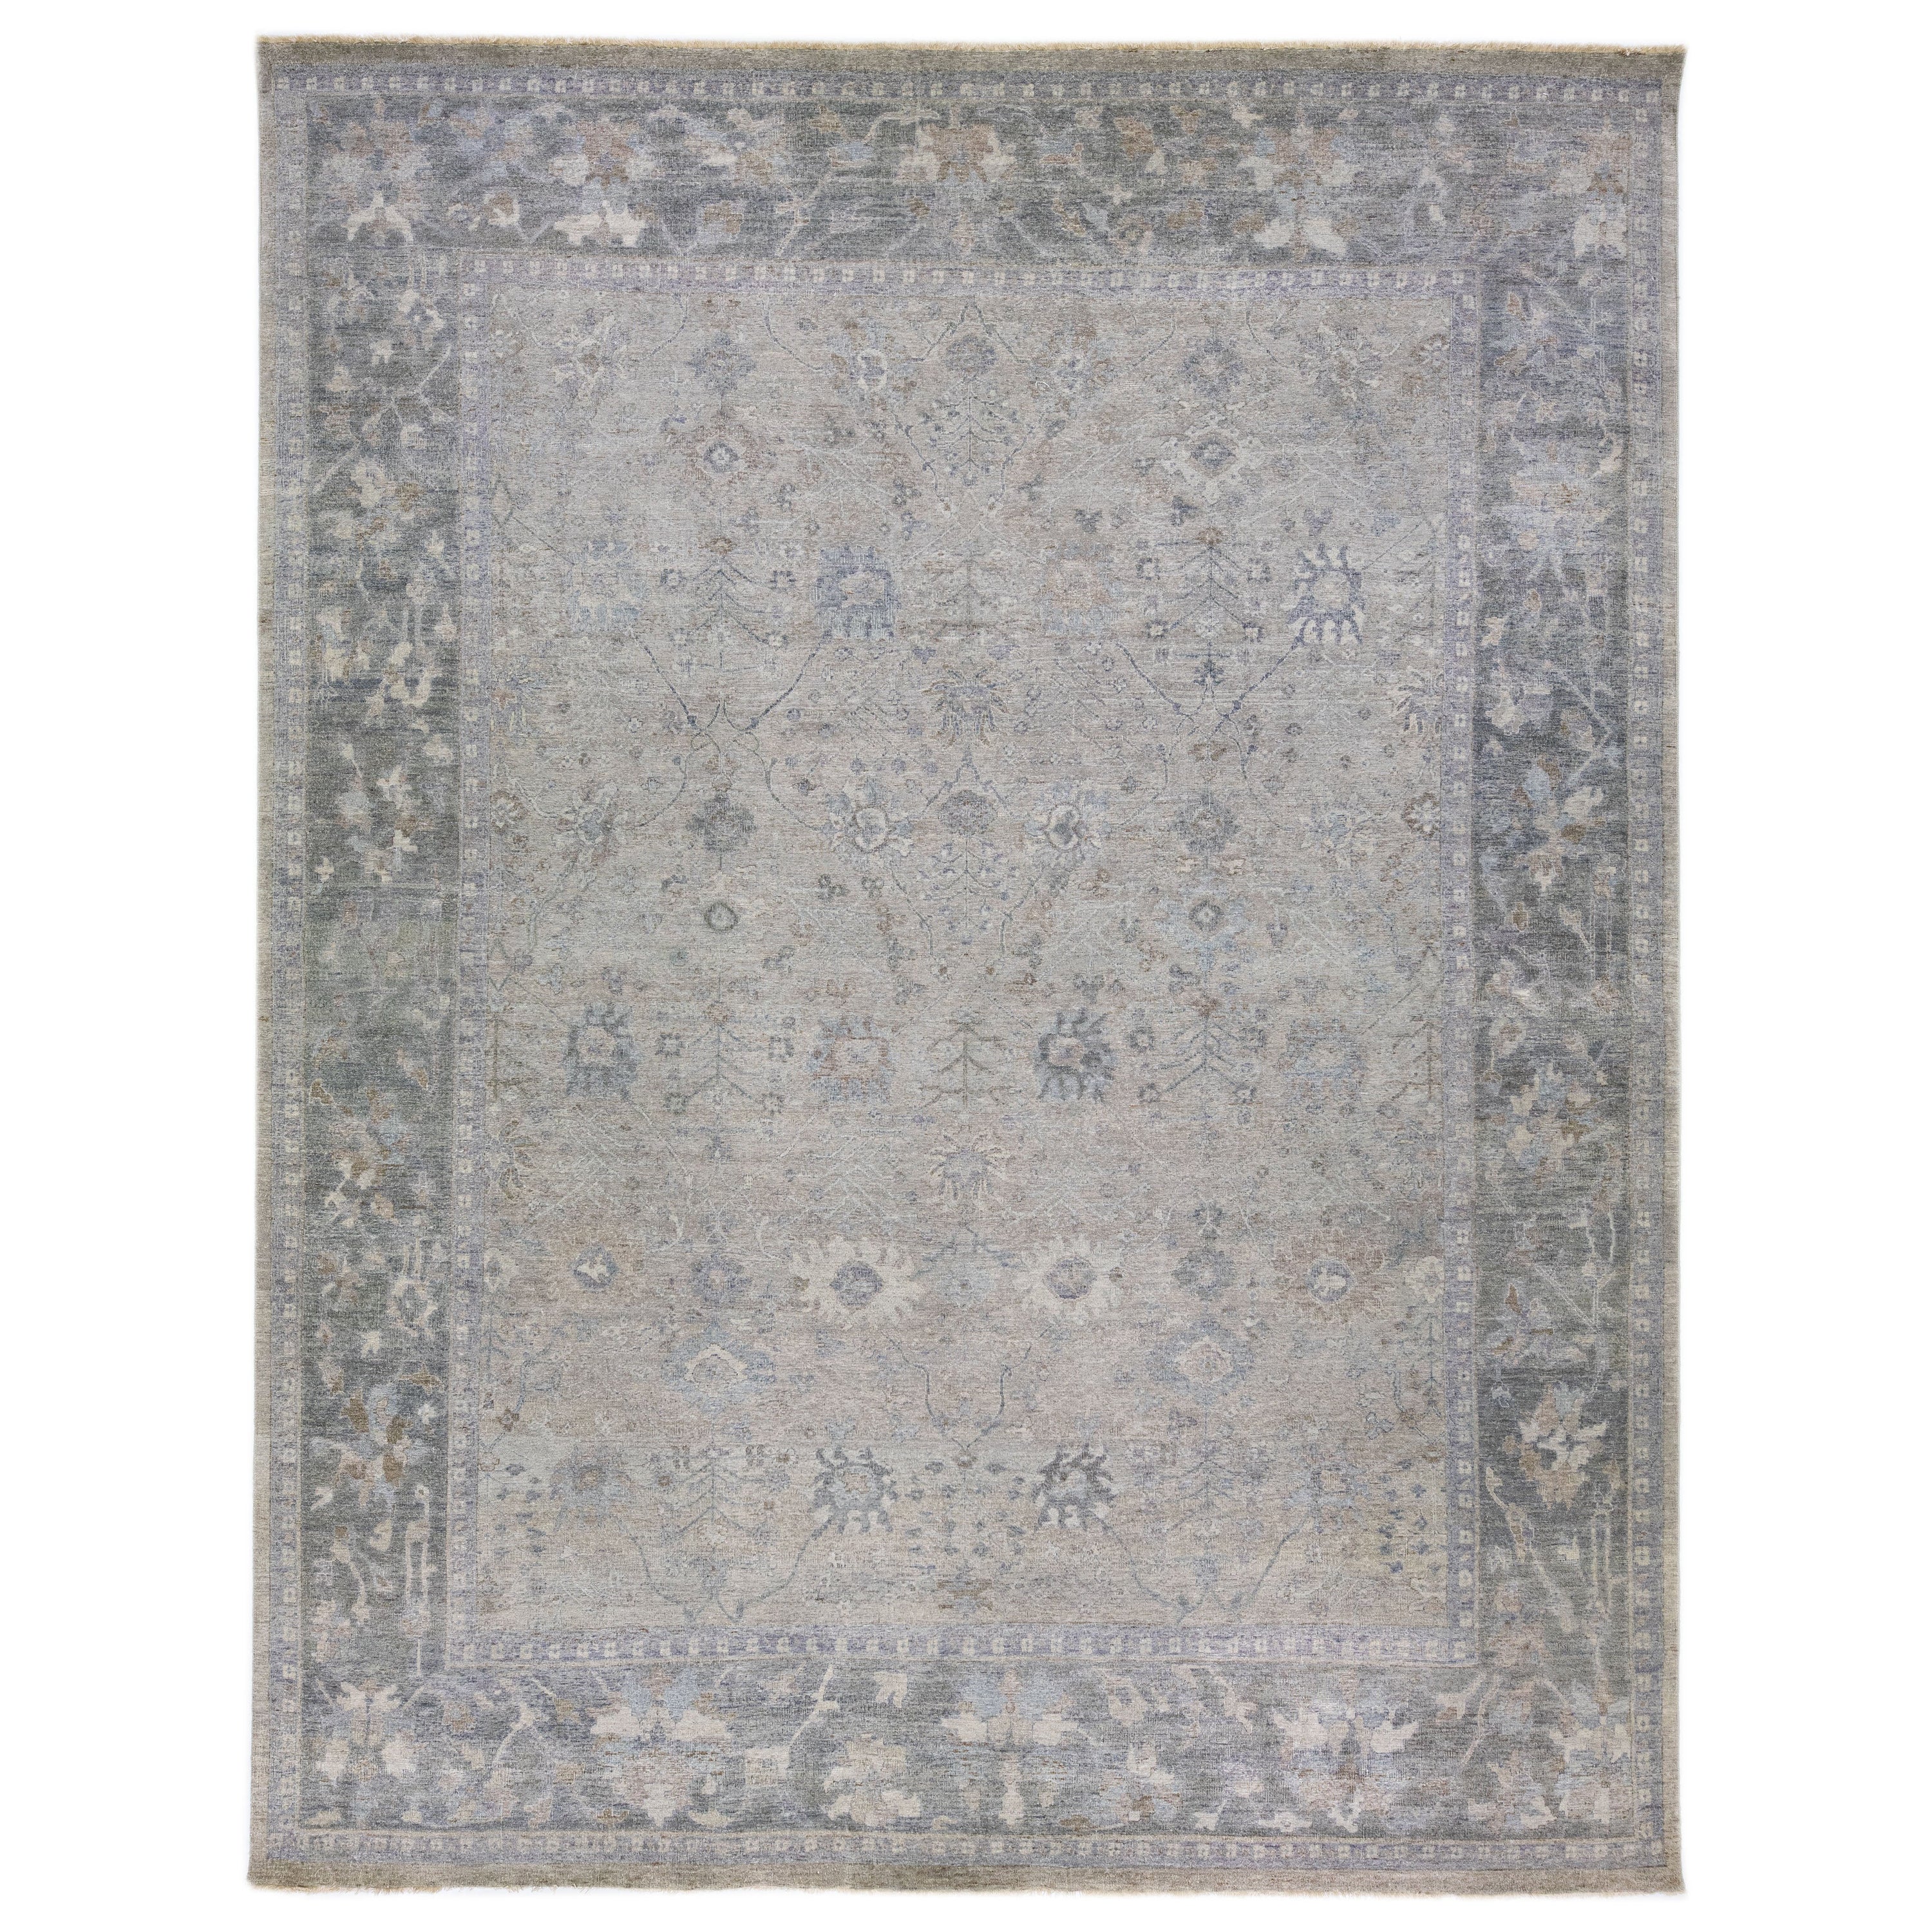 Apadana's Artisan Collection Hellgrauer handgefertigter Teppich aus indischer Wolle mit Blumenmuster